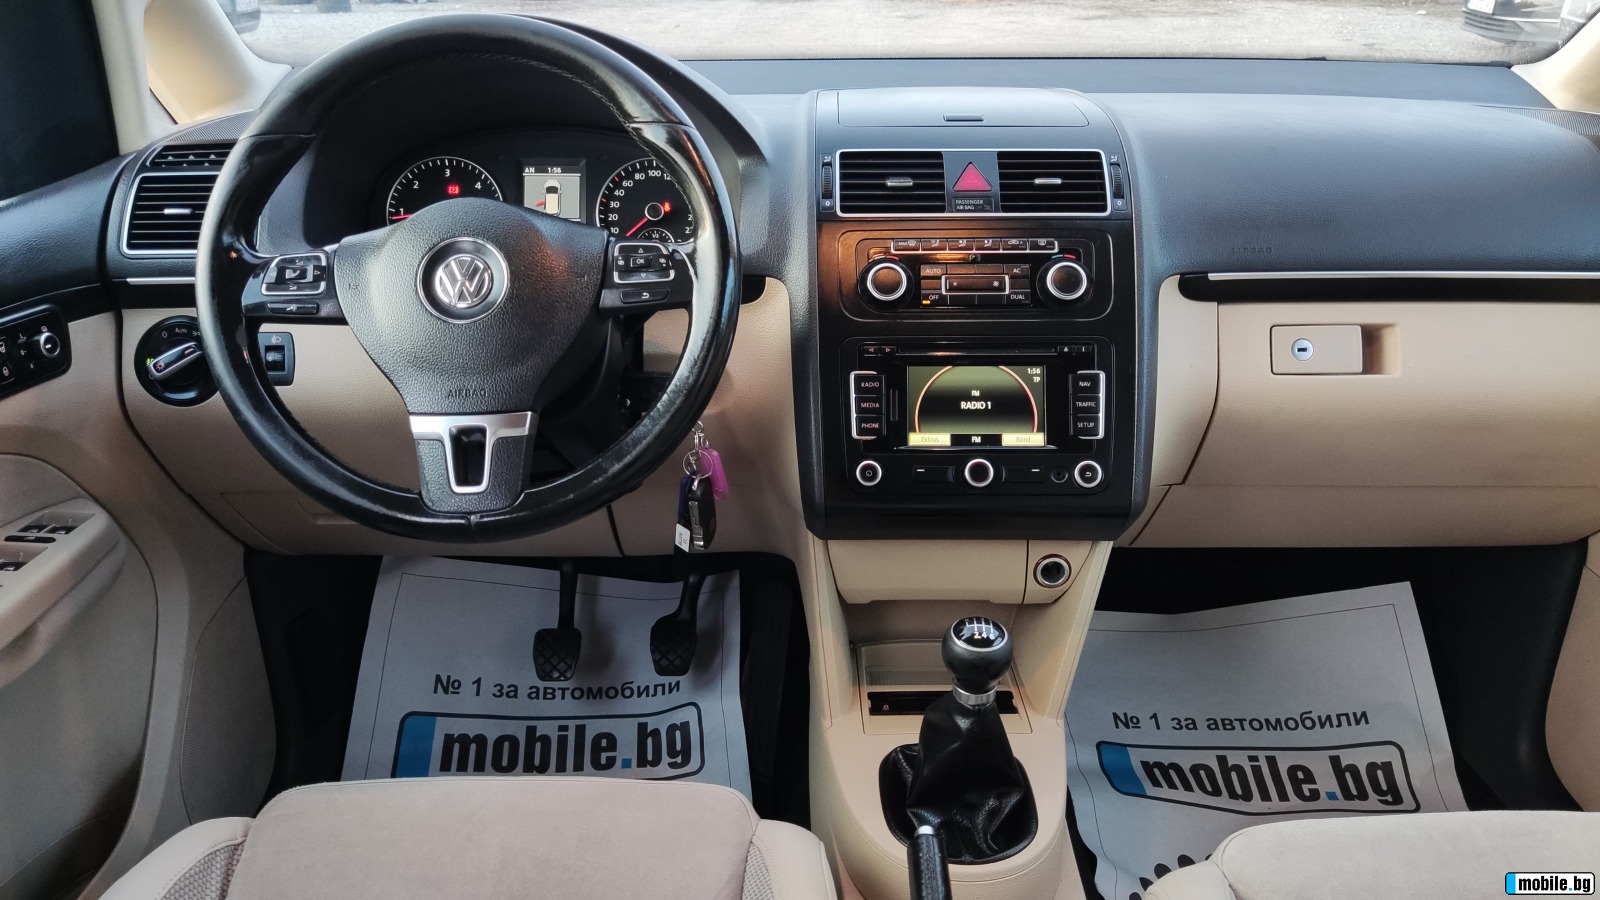 VW Touran 2.0tdi 140.7. | Mobile.bg   10